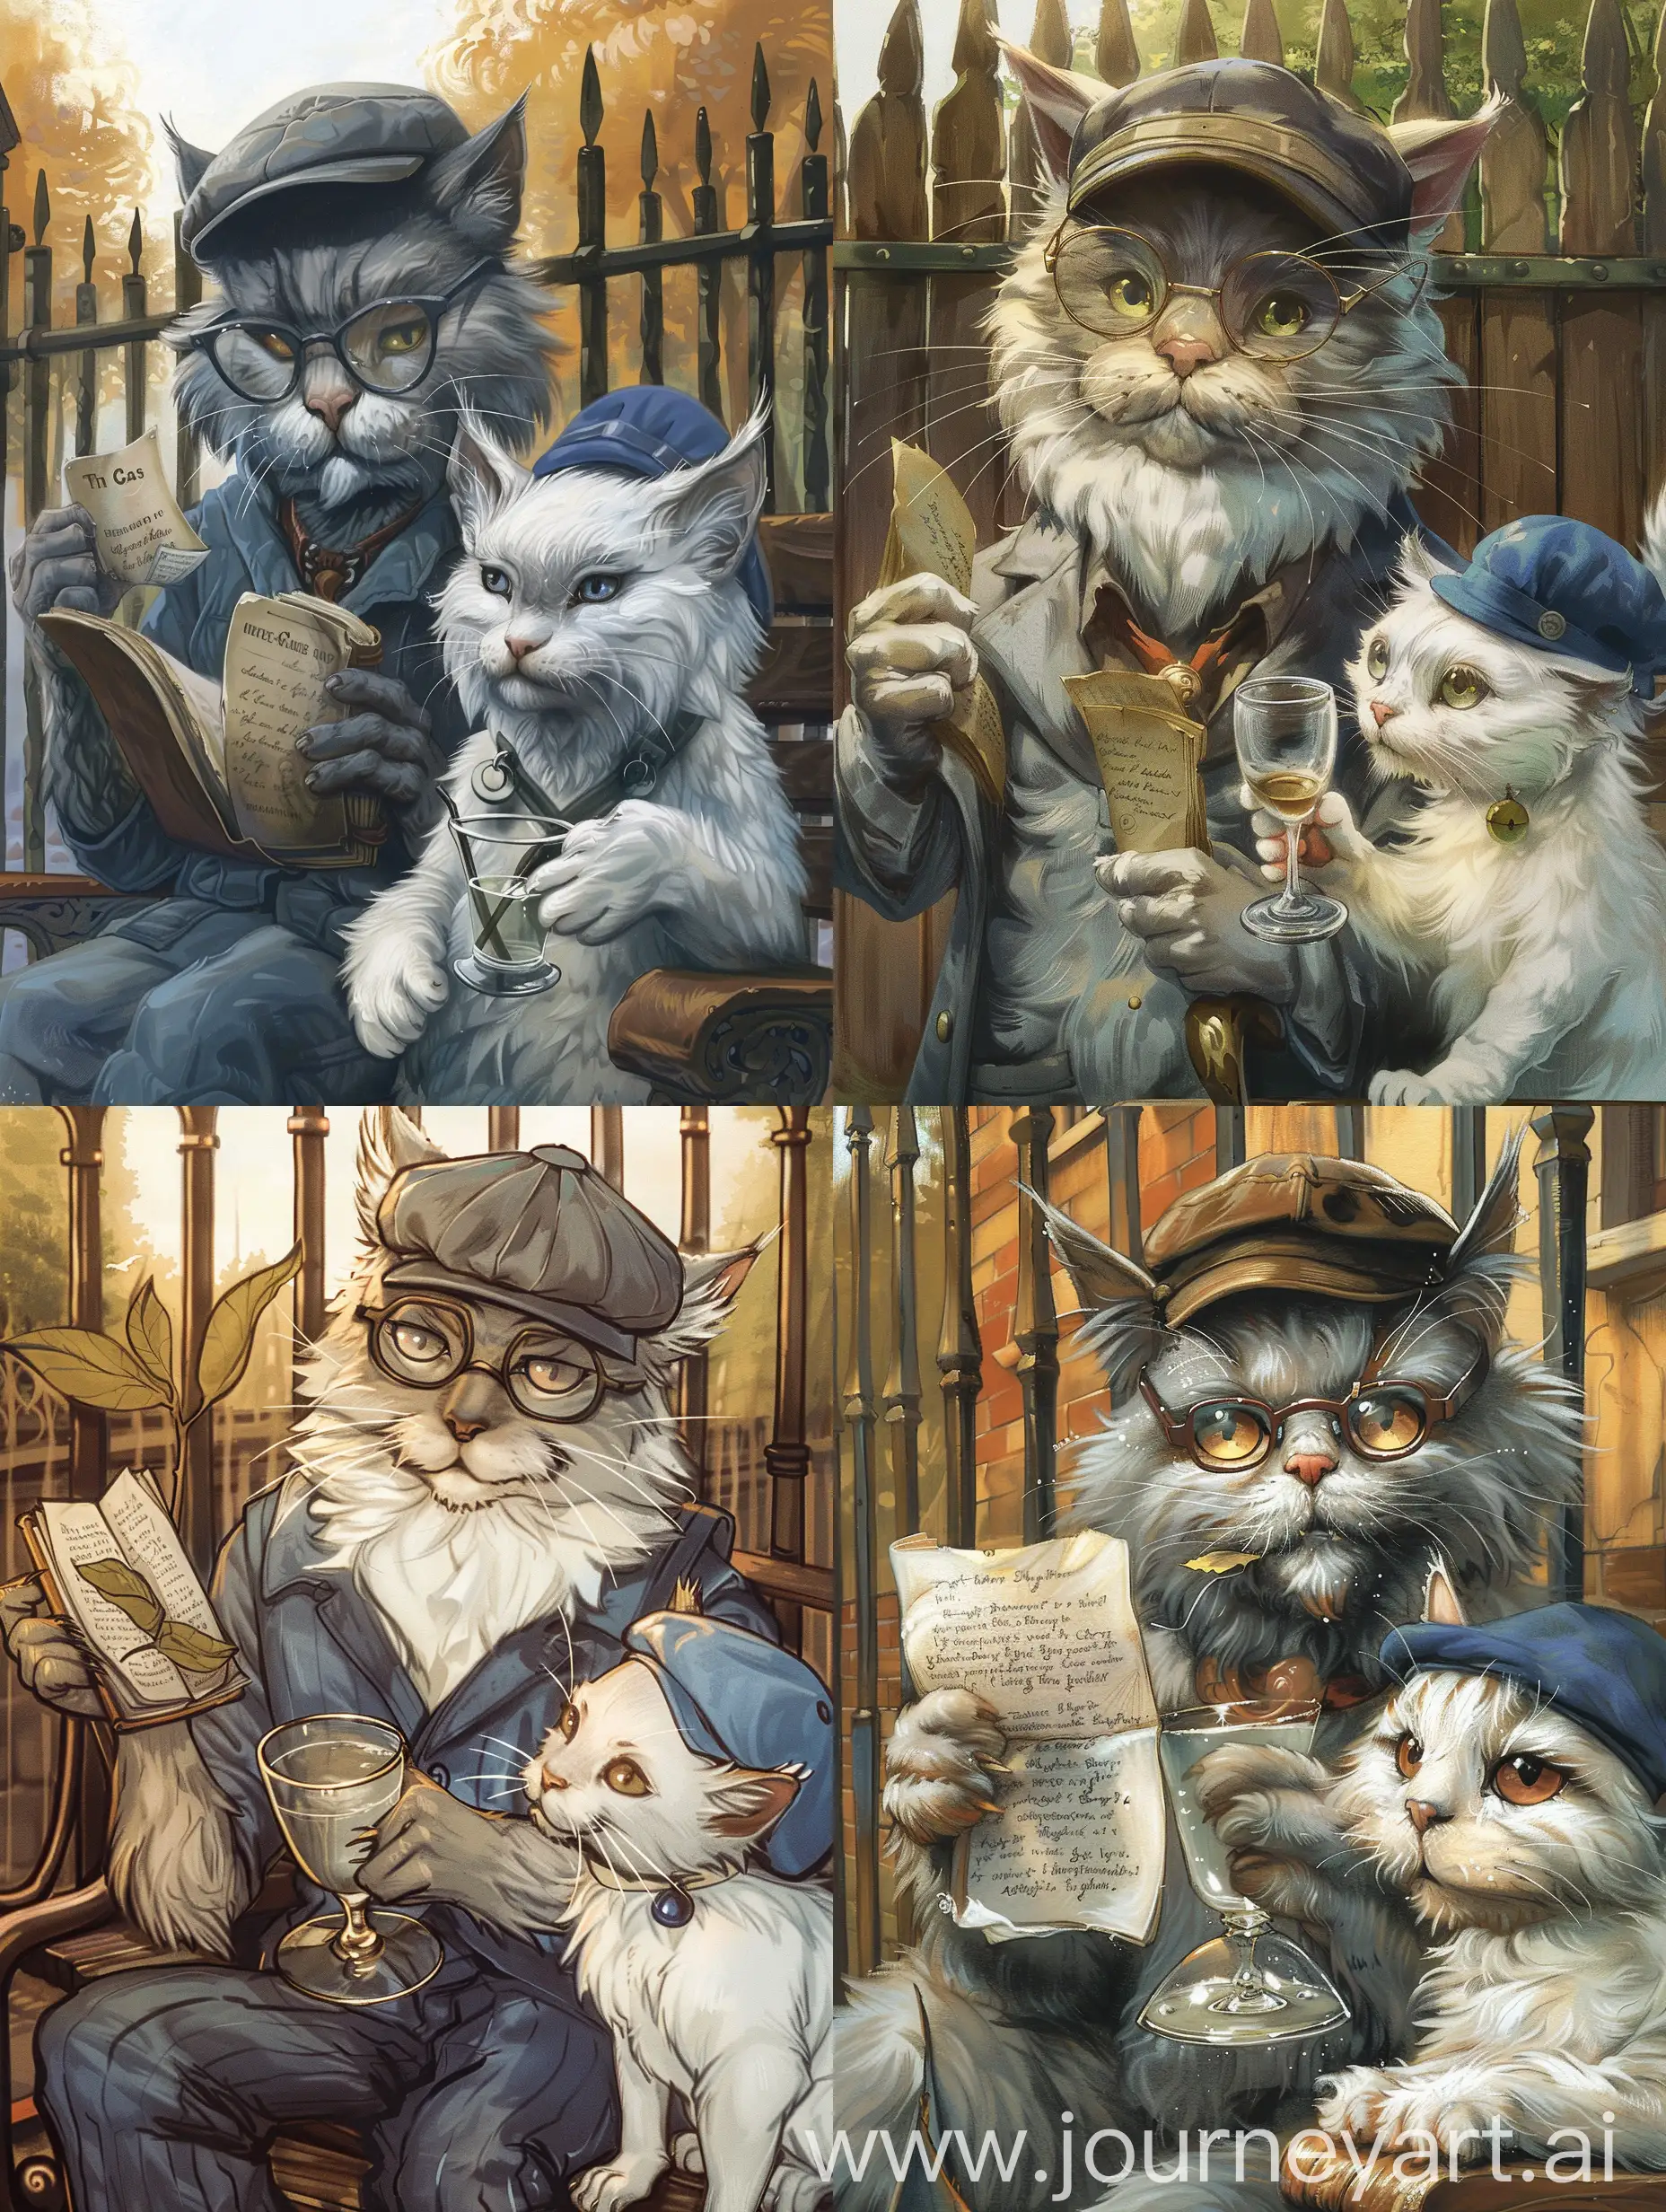 Кот бывалый, серый, в кепке и в очках держит в одной лапе листки какой-то рукописи, в другой лапе рюмка .  Его слушает белая кошка в синем берете. И кот и кошка сидят на скамейке  у забора.